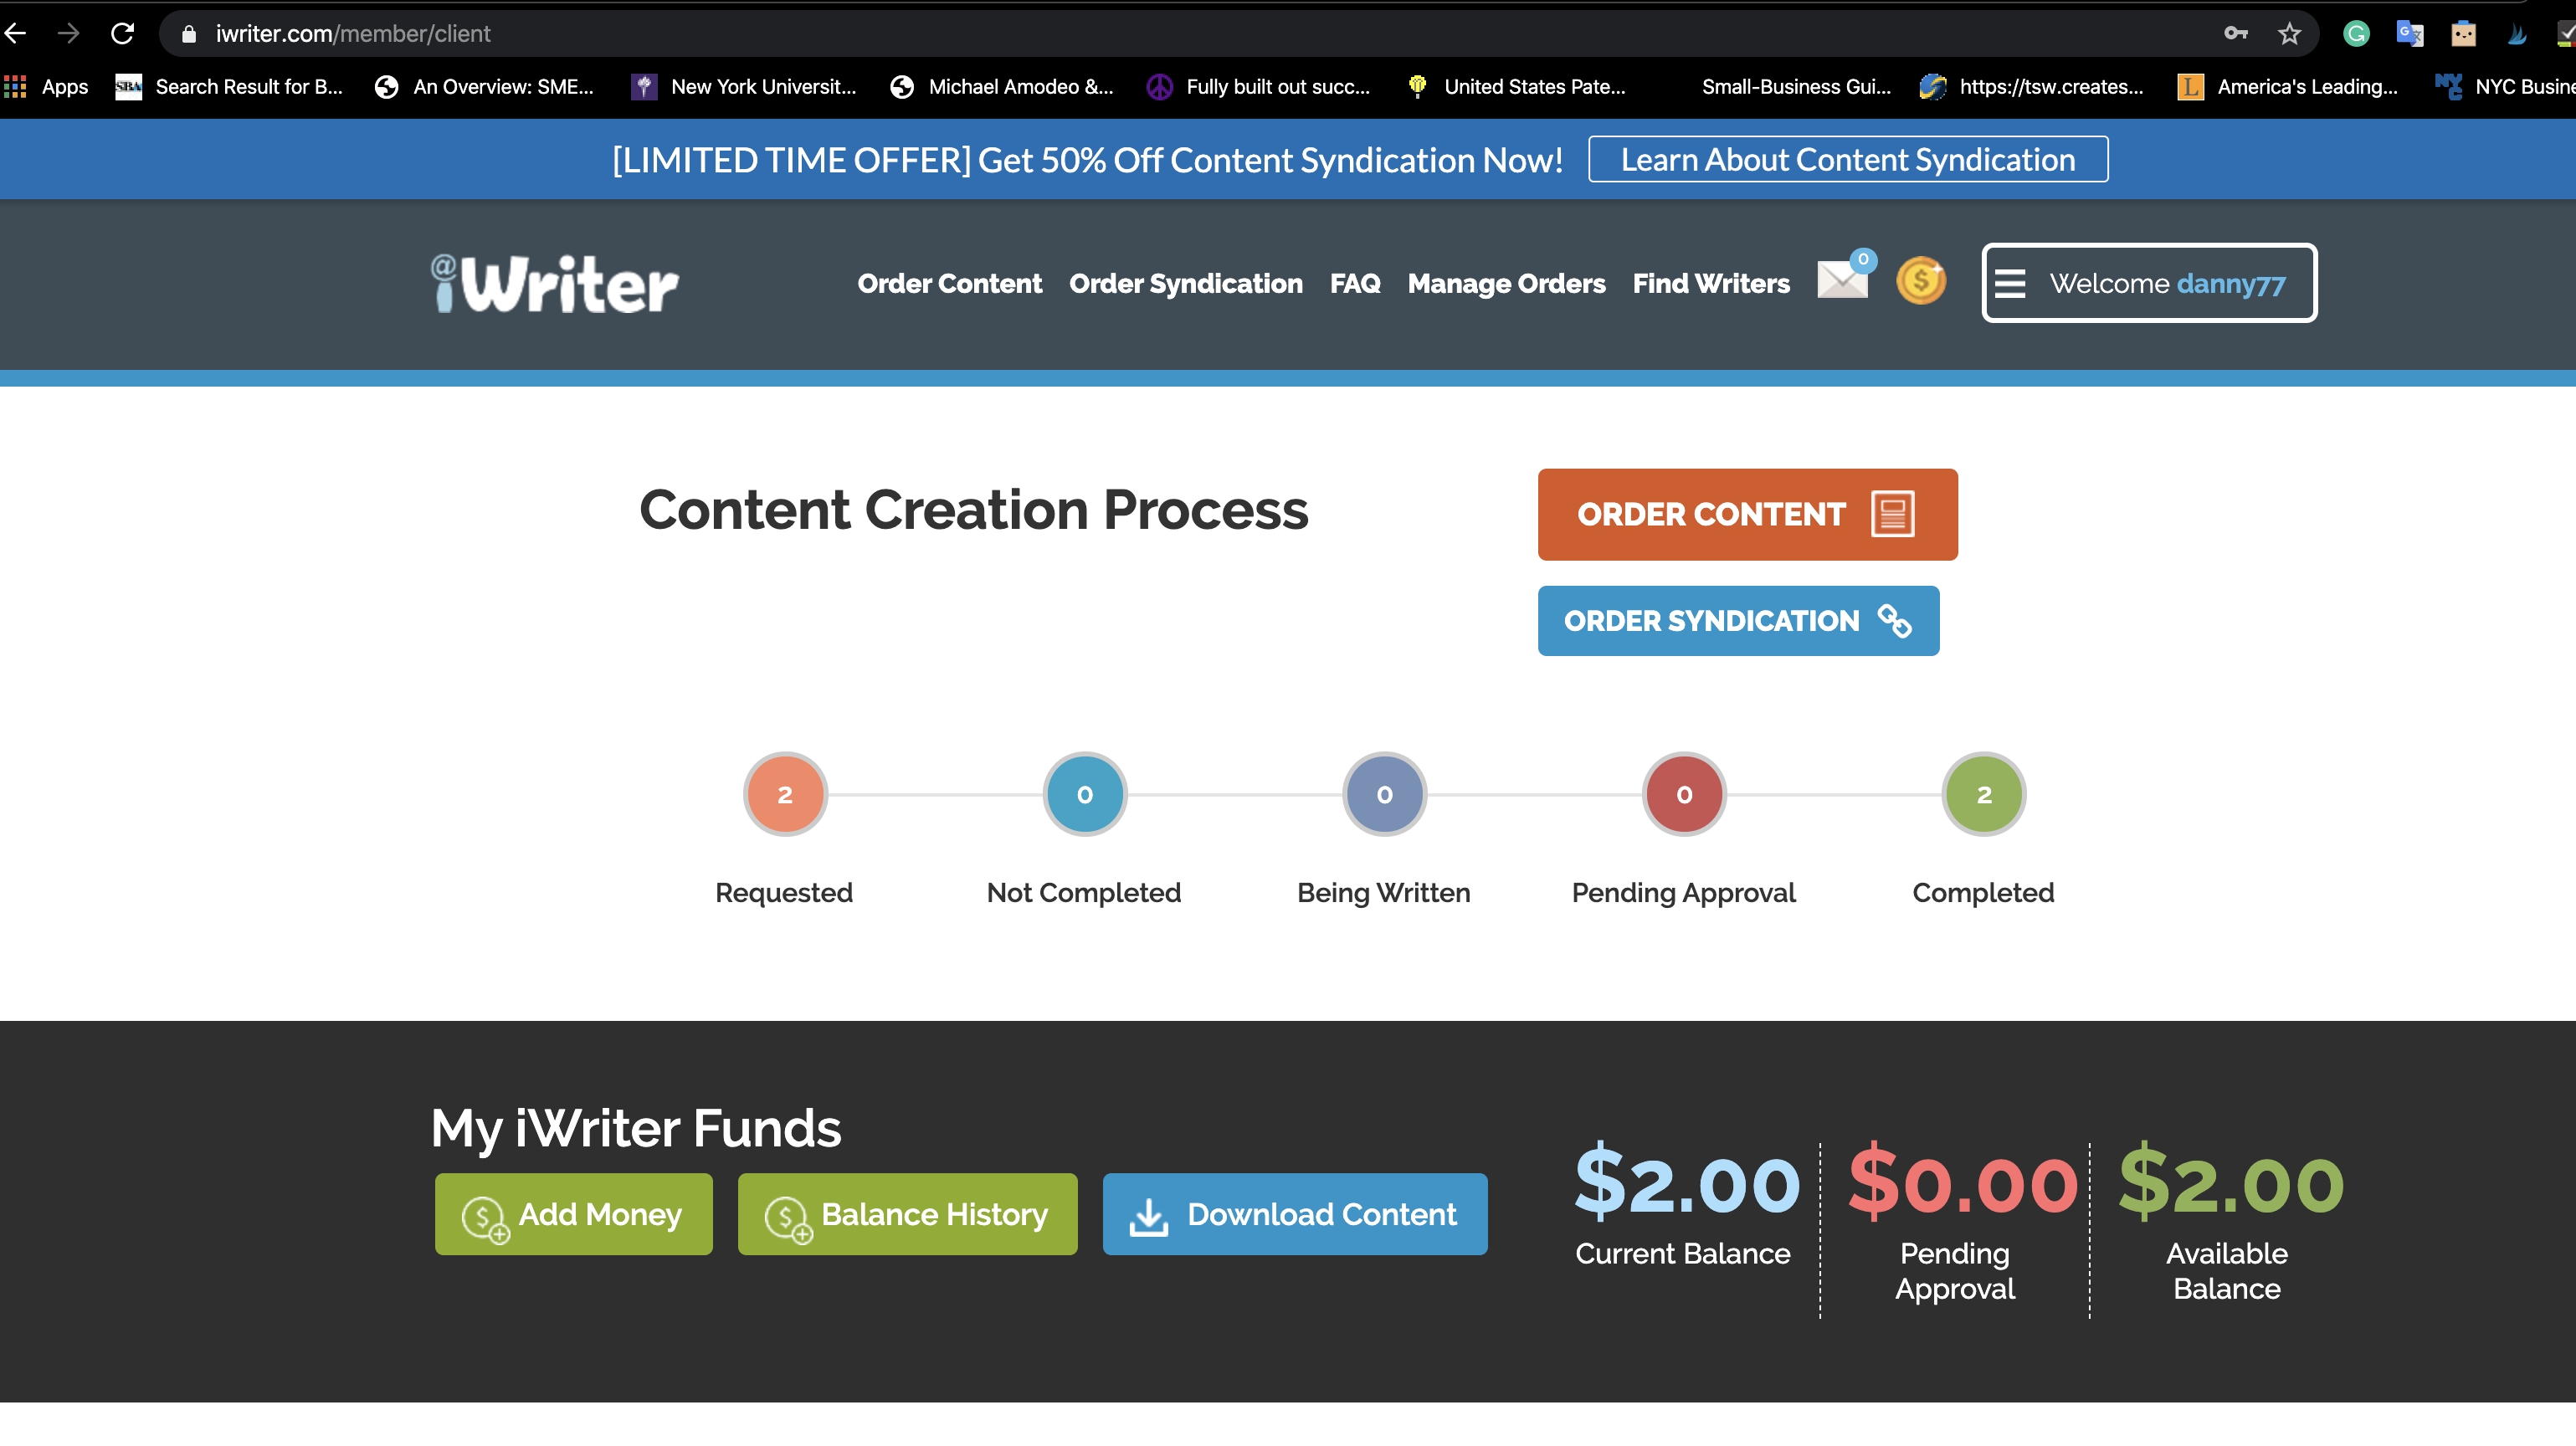 iWriter เว็บไซต์ซื้อขายเนื้อหาบทความต่างๆทางออนไลน์ ถอนเงินขั้นต่ำ $ 20 สร้างรายได้ง่ายๆ แค่ขายบทความ